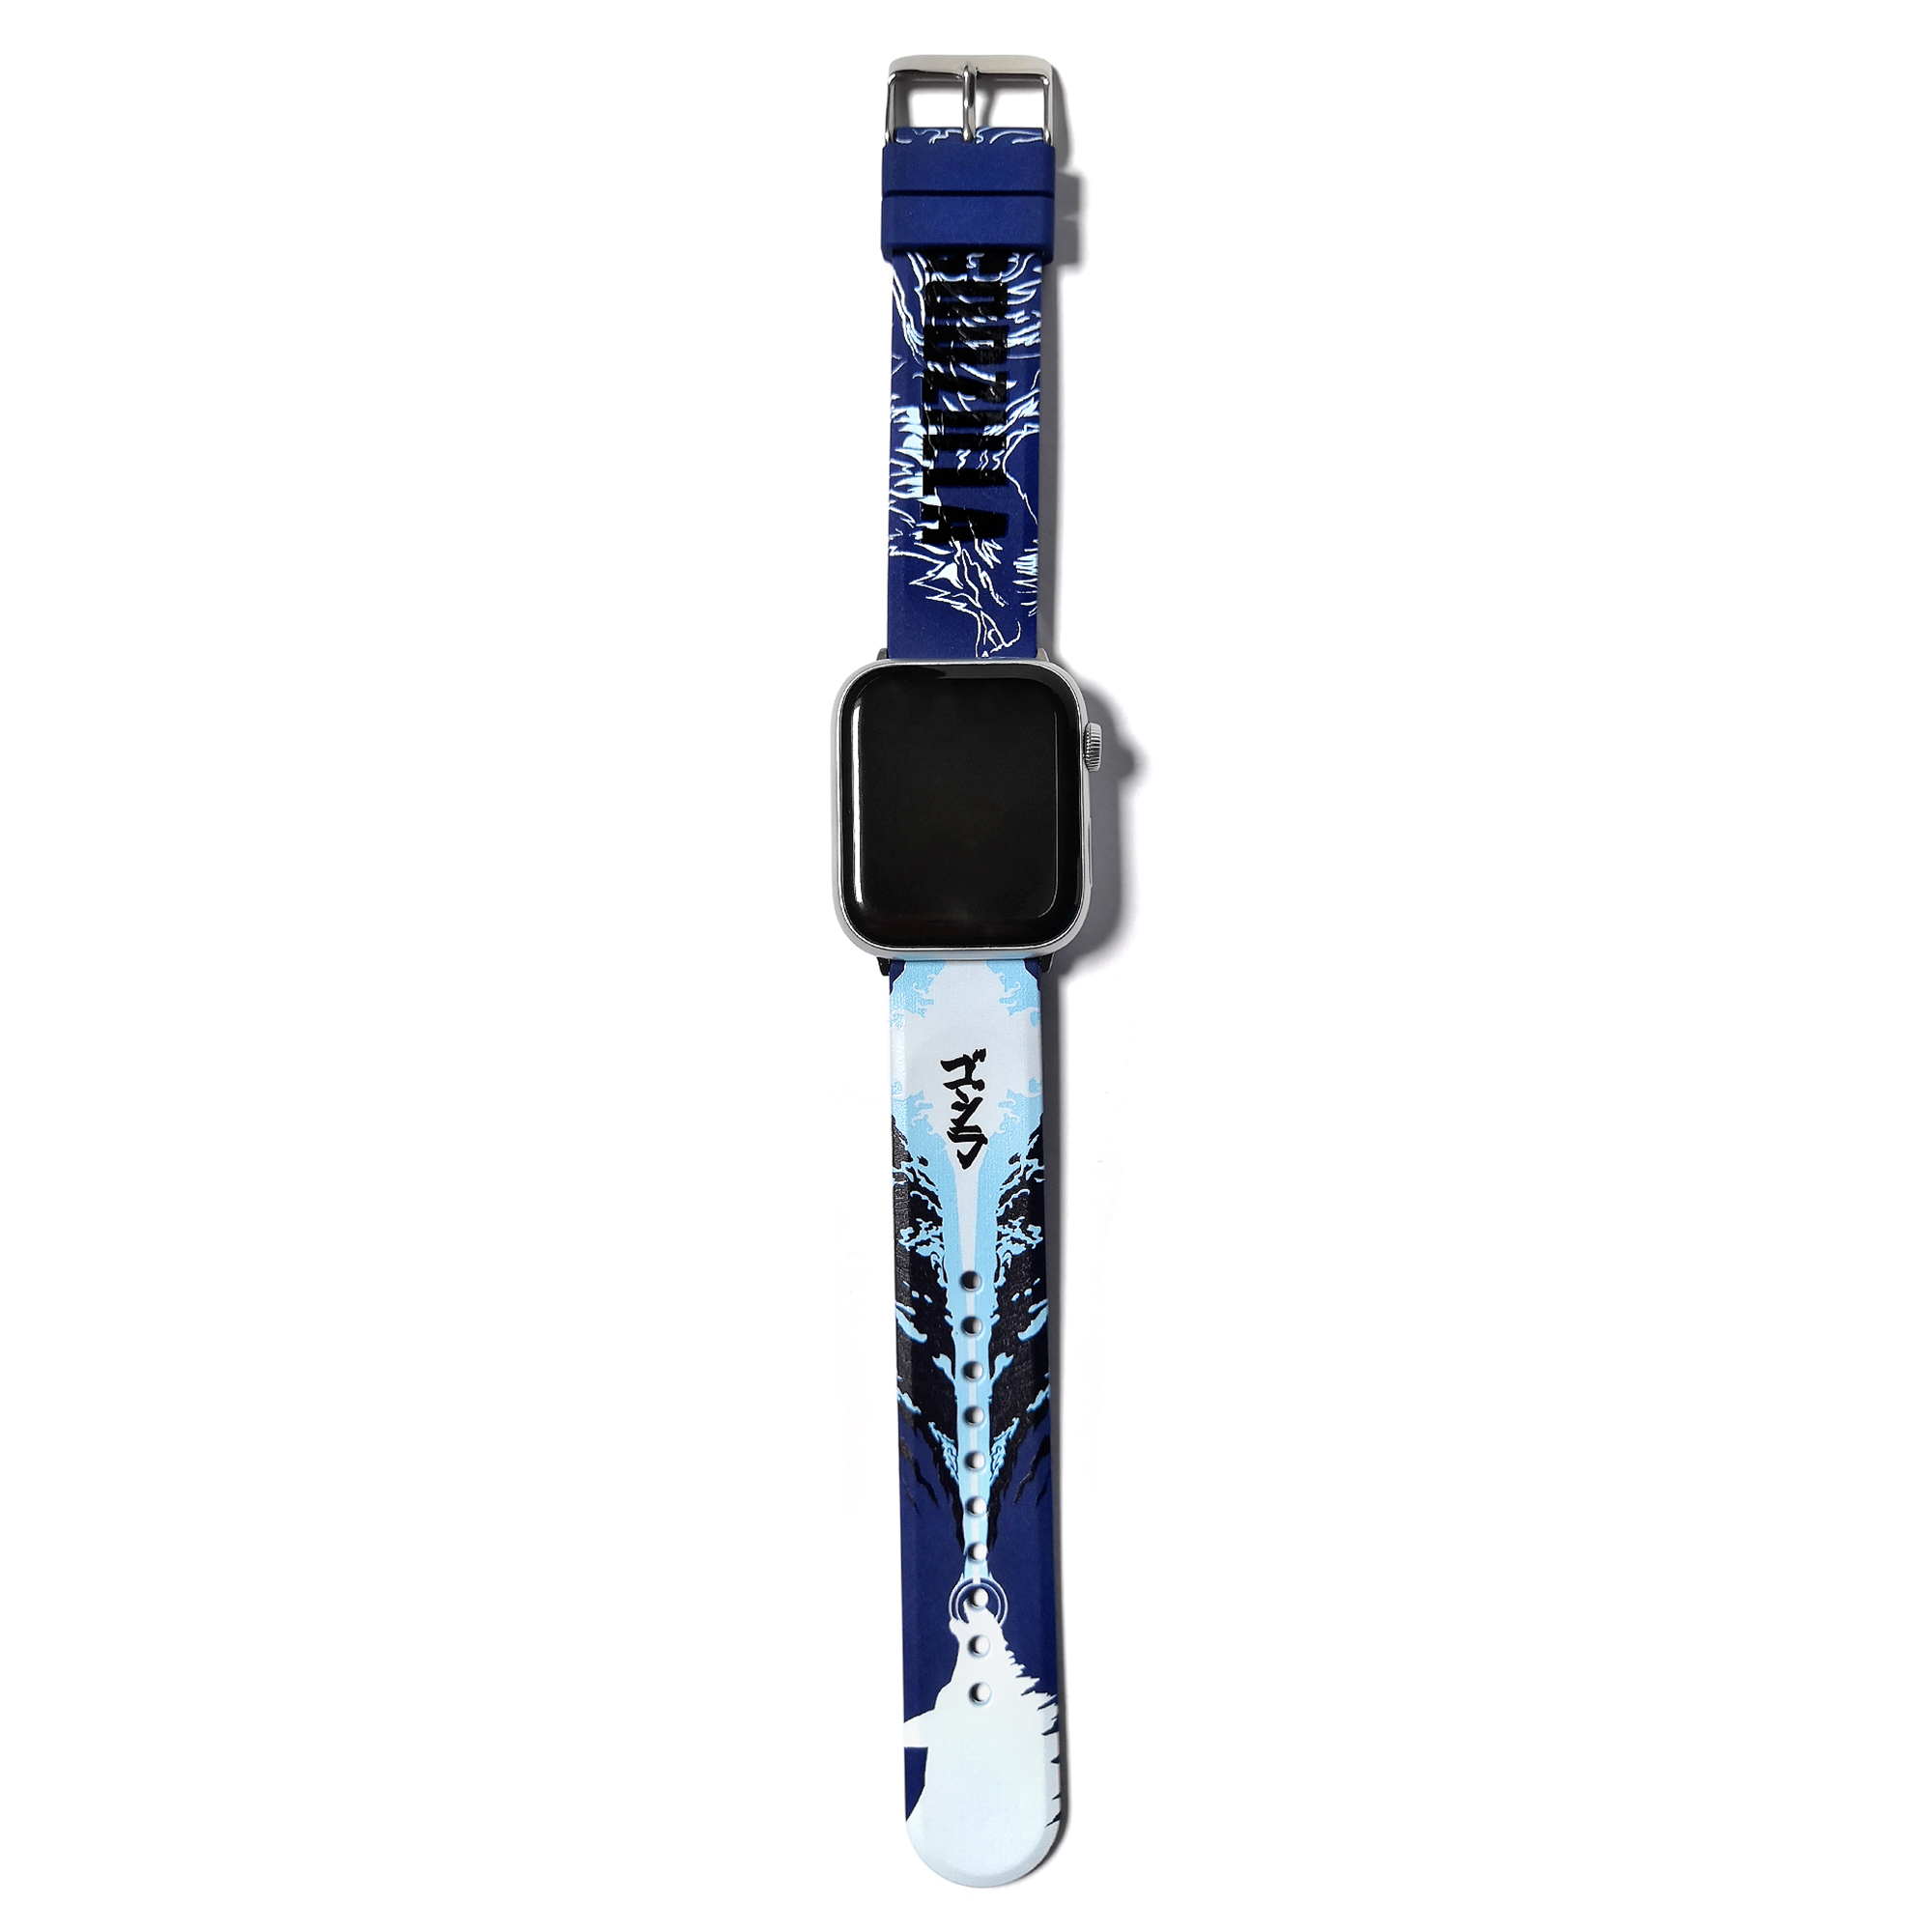 Apple Watch Band - Godzilla 1.jpg